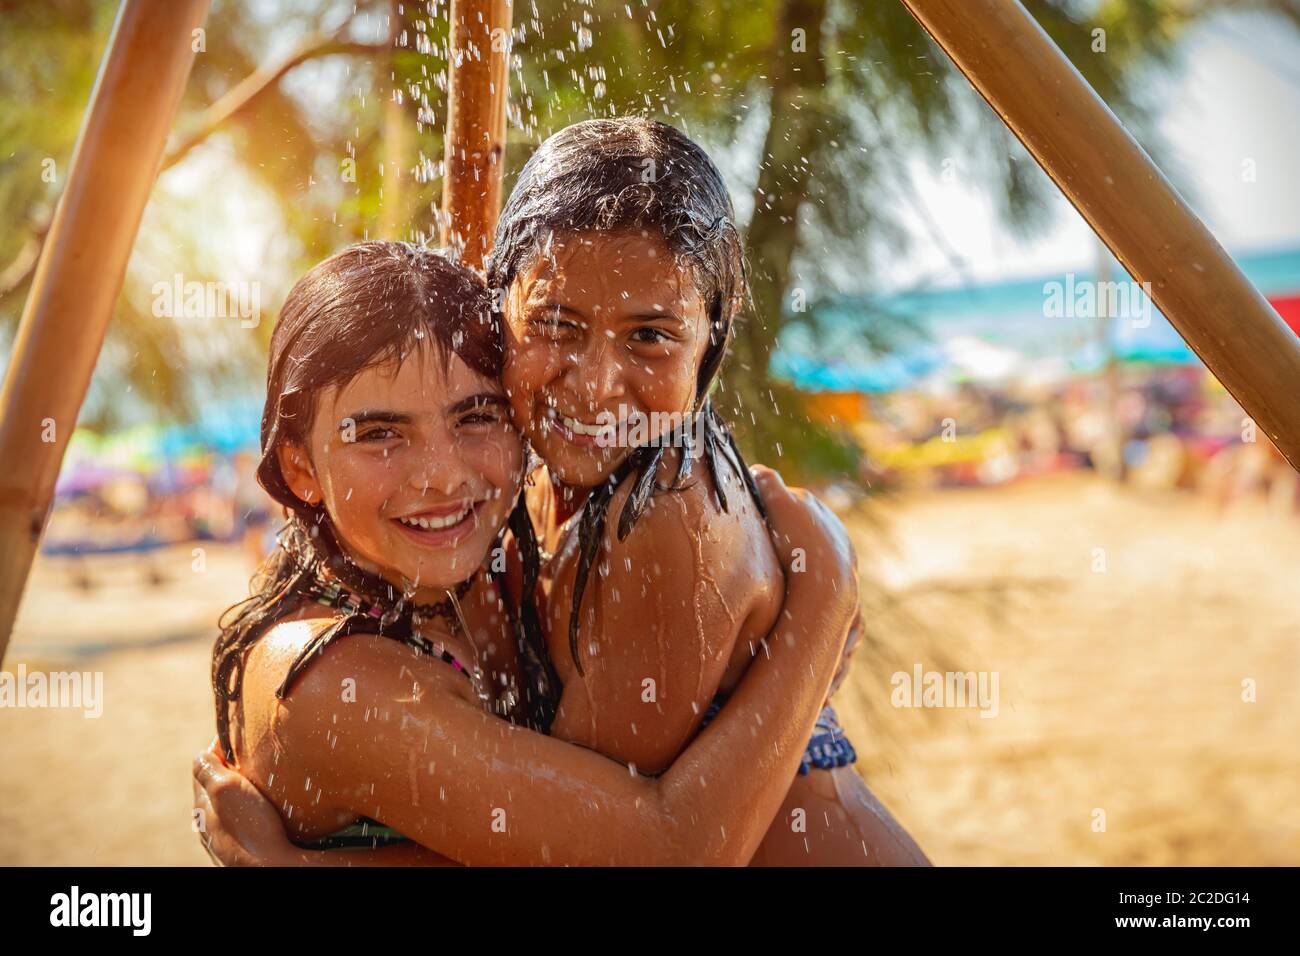 Mädchen stehen zusammen unter der Dusche Stockfotografie - Alamy